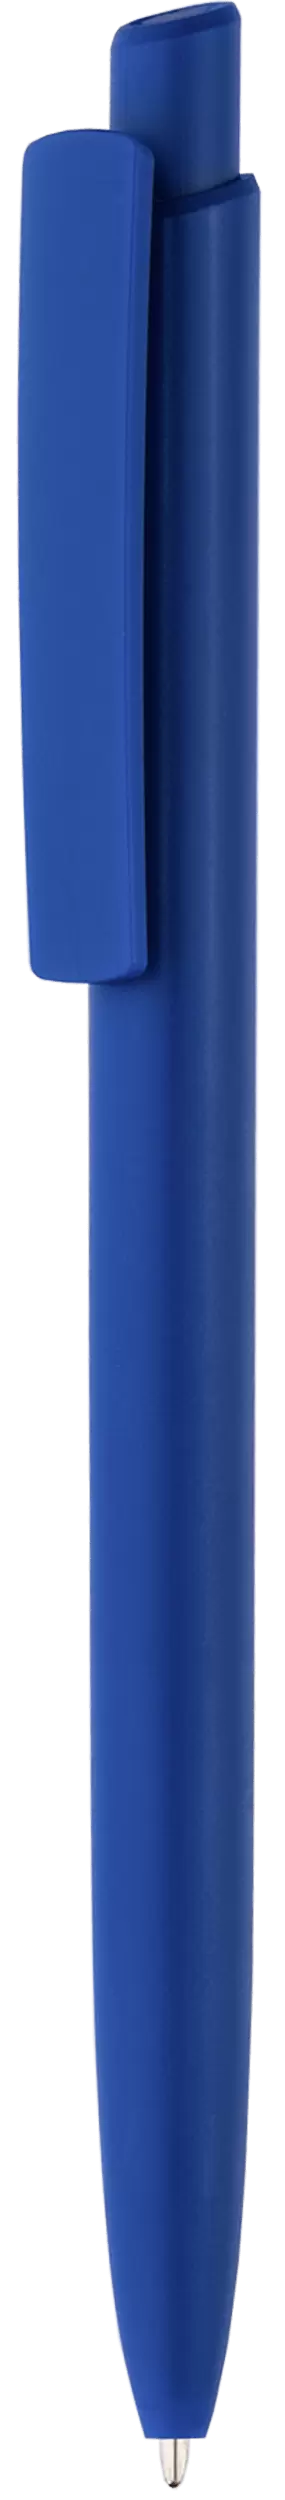 Ручка POLO COLOR Синяя 1303-01